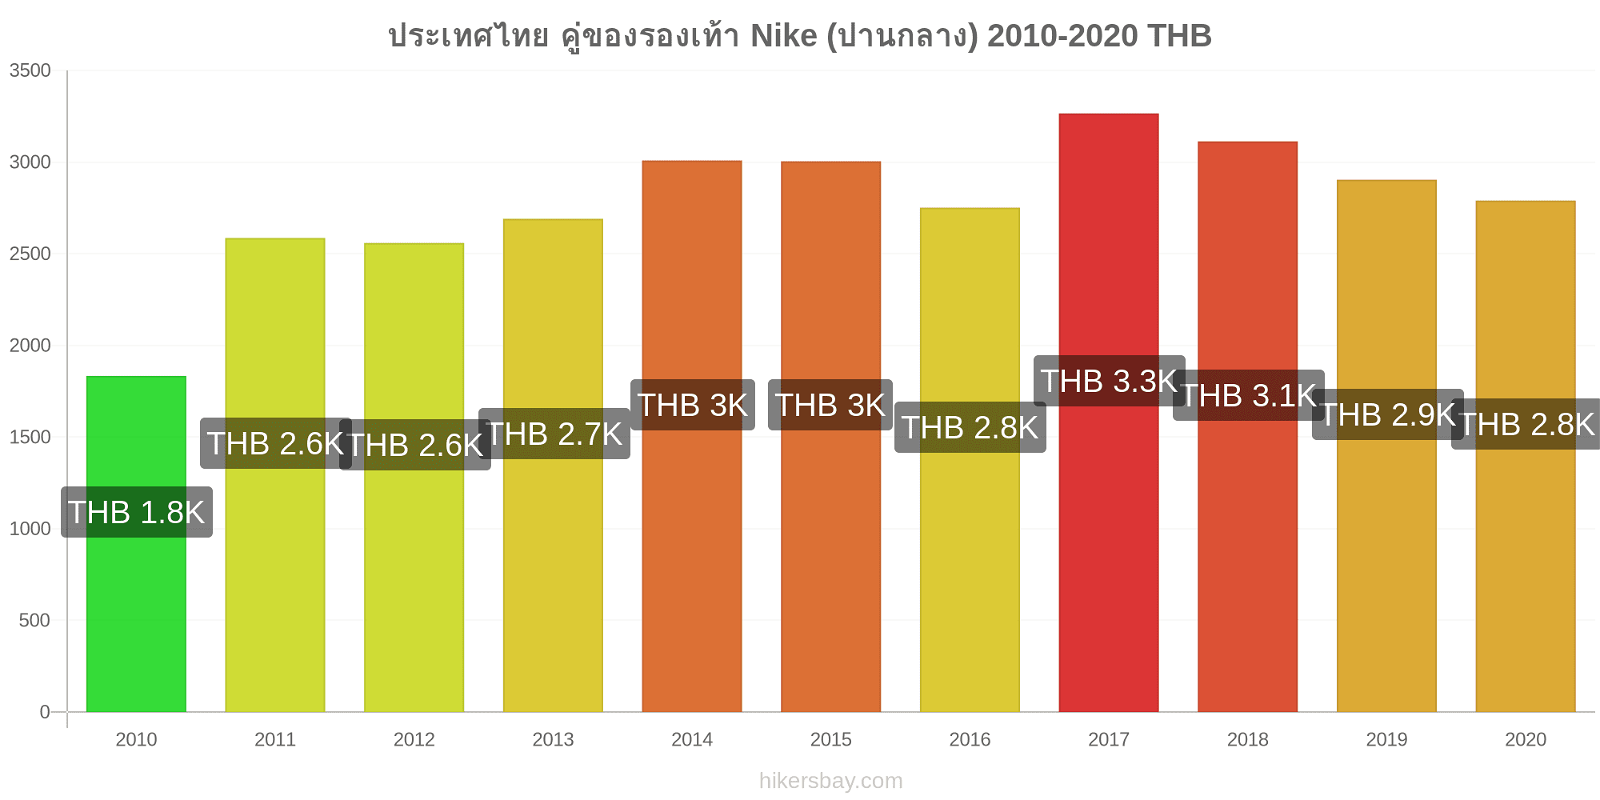 ประเทศไทย การเปลี่ยนแปลงราคา คู่ของรองเท้า Nike (ปานกลาง) hikersbay.com